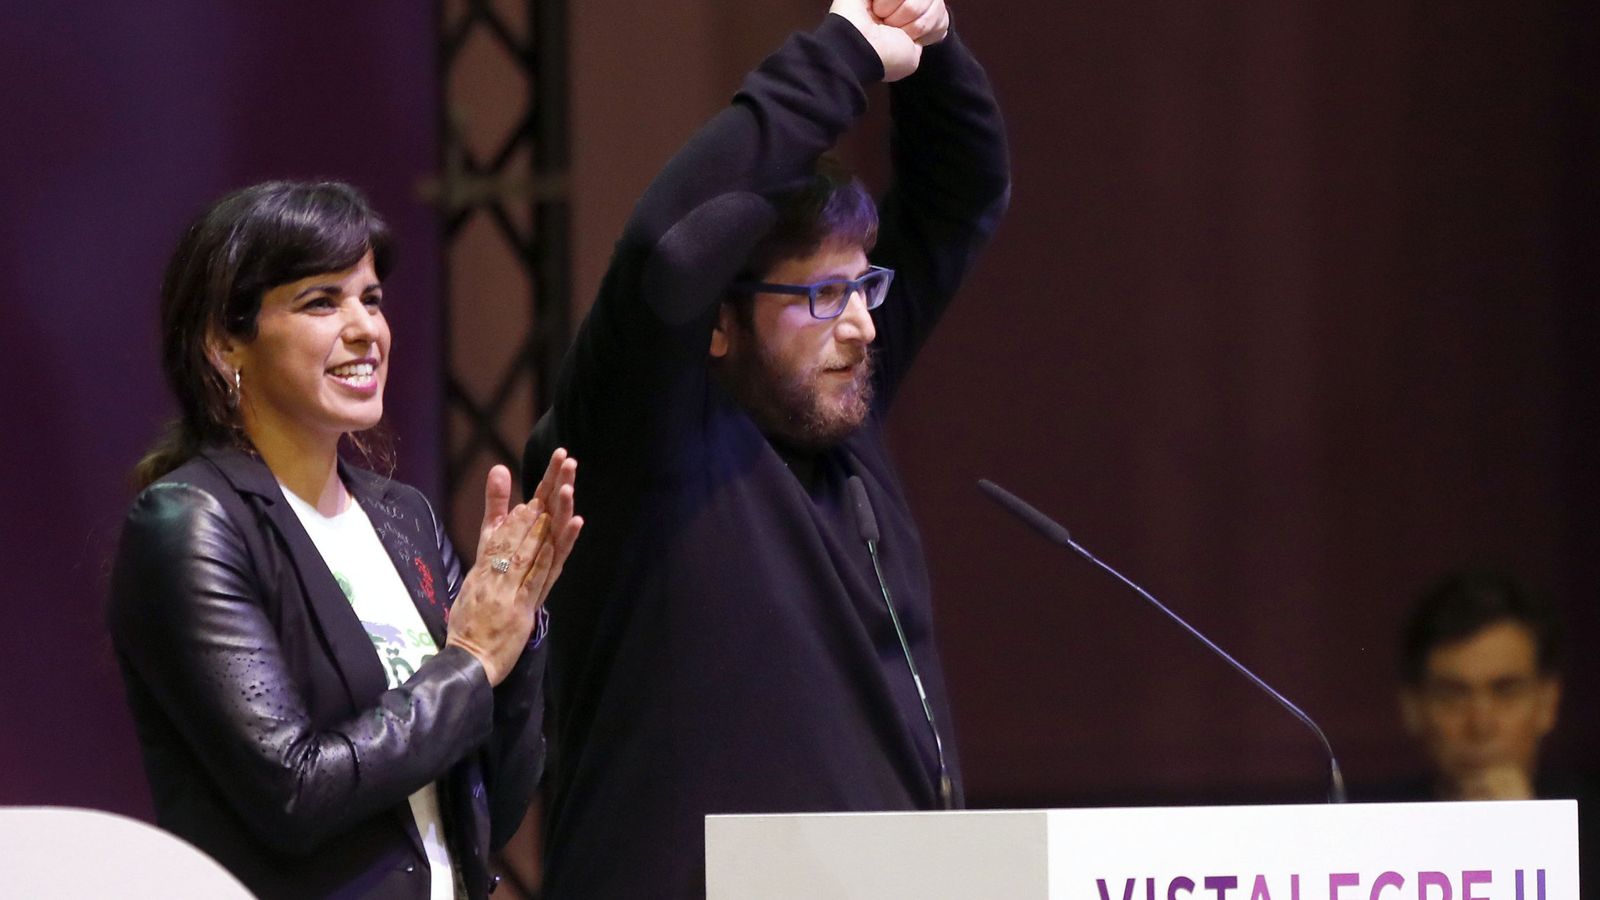 Foto: La coordinadora en Andalucía, Teresa Rodríguez, y el eurodiputado Miguel Urbán, en la asamblea de Vistalegre II, donde presentaron candidatura propia de Anticapitalistas a los órganos de dirección. (EFE)